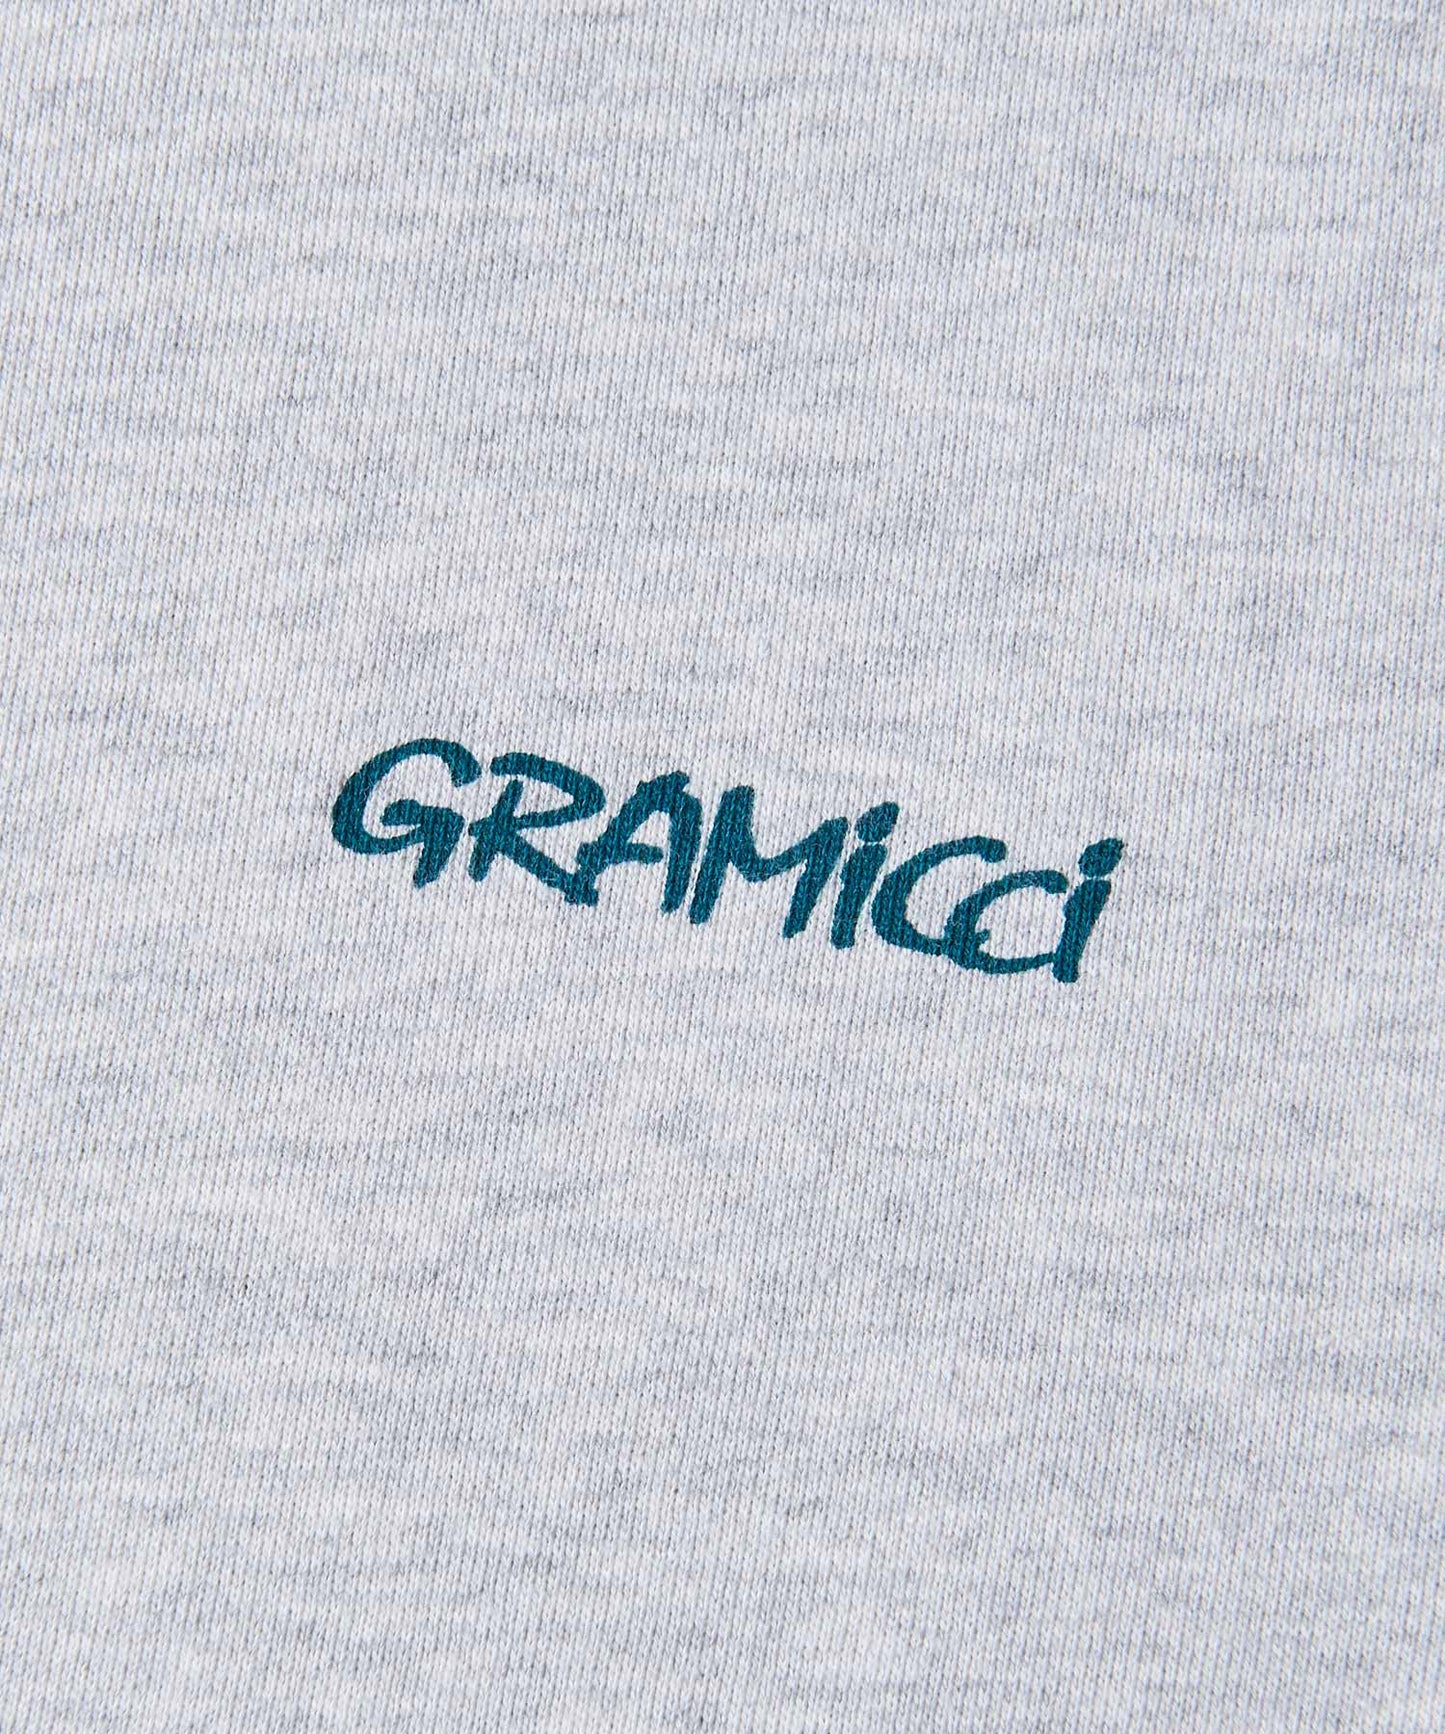 [GRAMICCI グラミチ] G-LOGO HOODED SWEATSHIRT | Ｇ-ロゴフーディースウェットシャツ